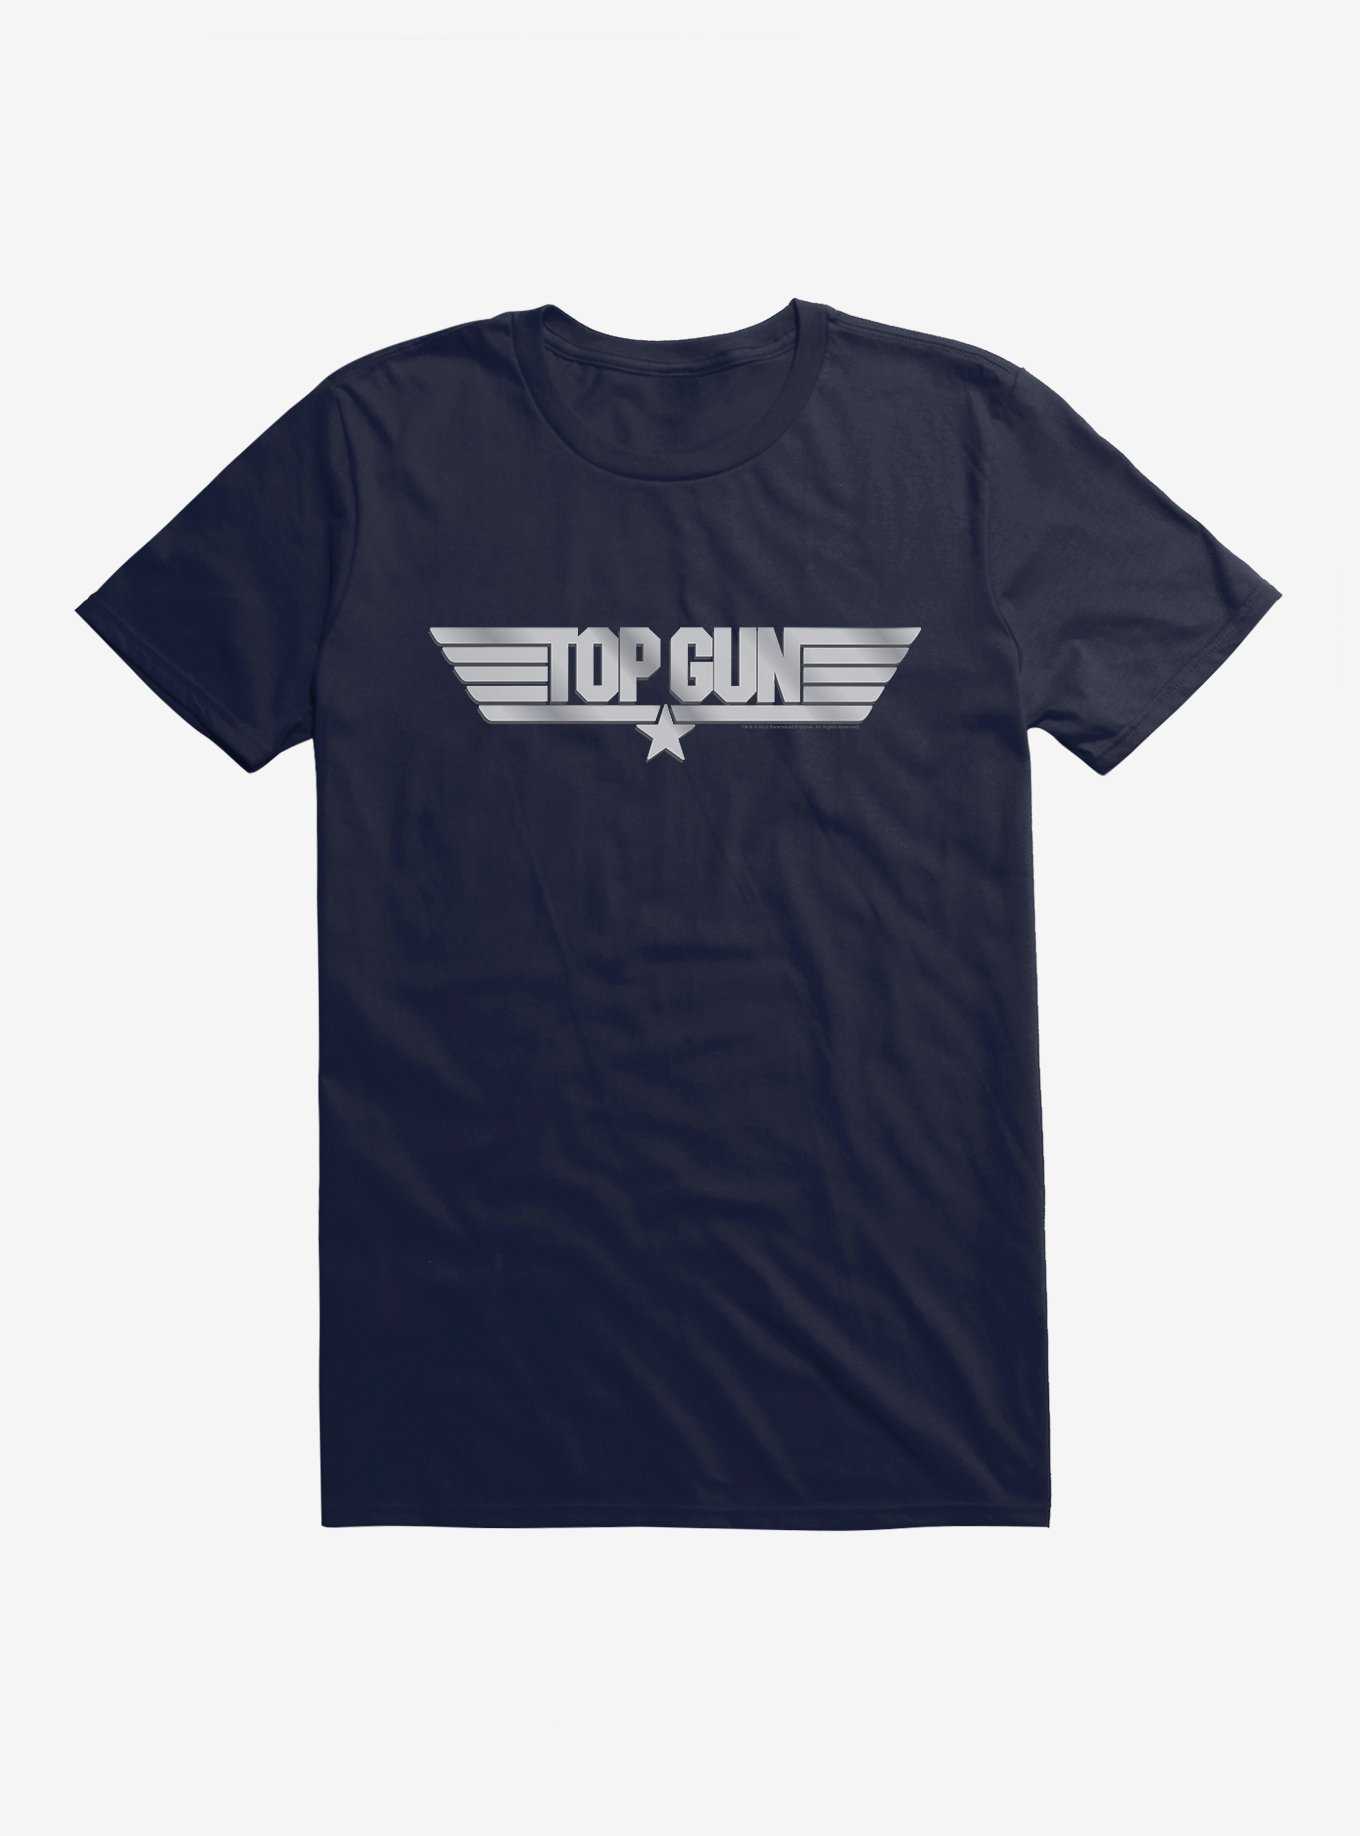 OFFICIAL Top Gun Merchandise & Topic Hot | Shirts